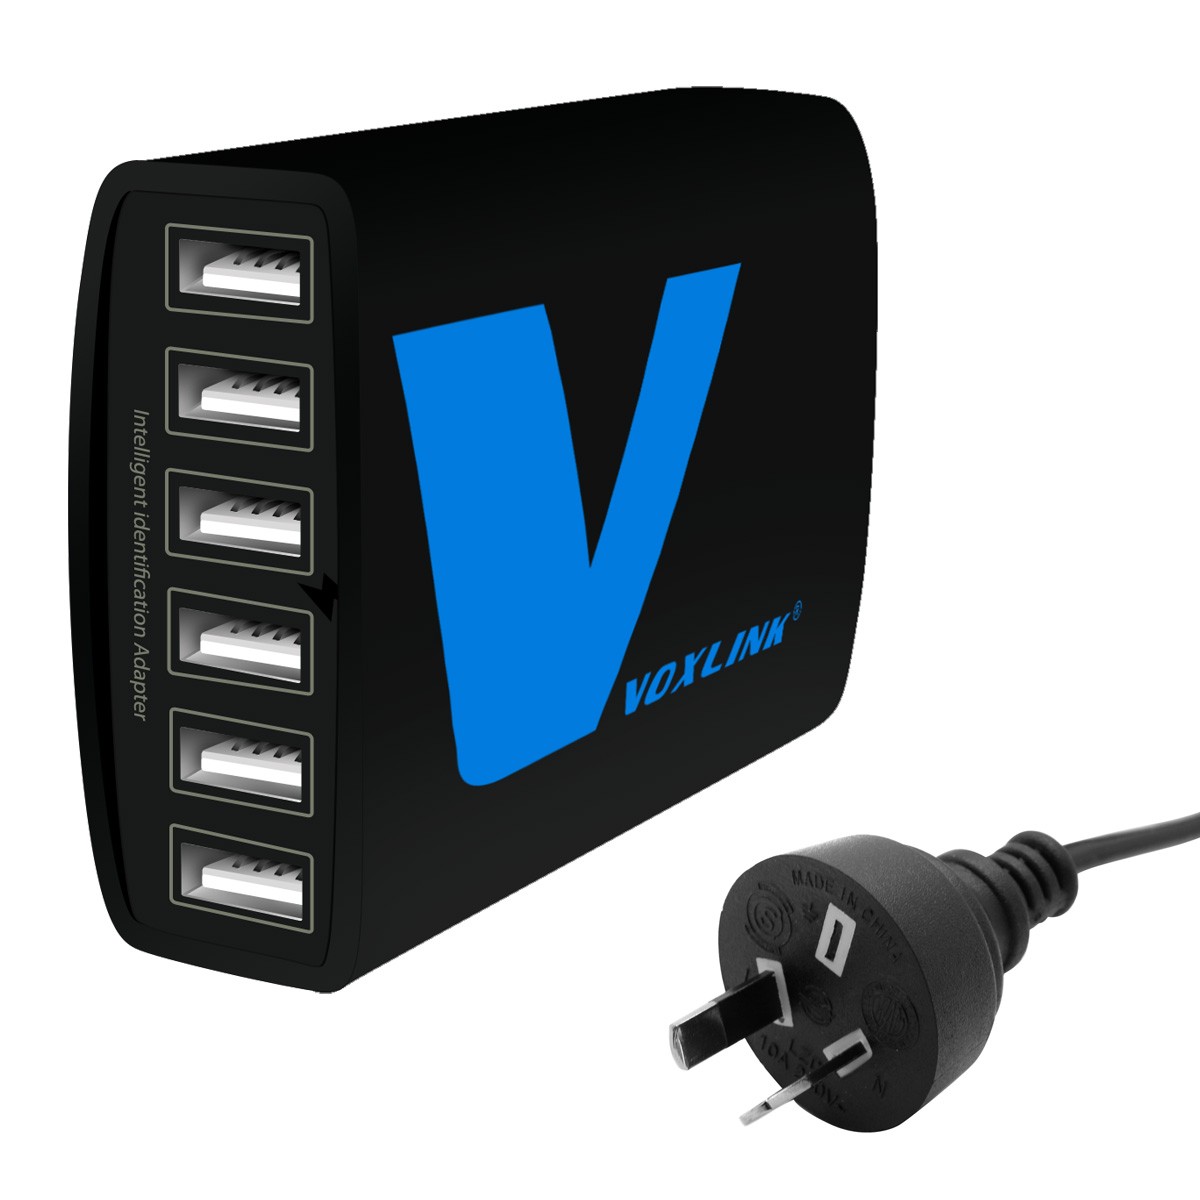 VOXLINK 50W 5 Port USB Charger Travel Adapter 5V/10A Intelligent Detec Charging white 50W 5 Port US